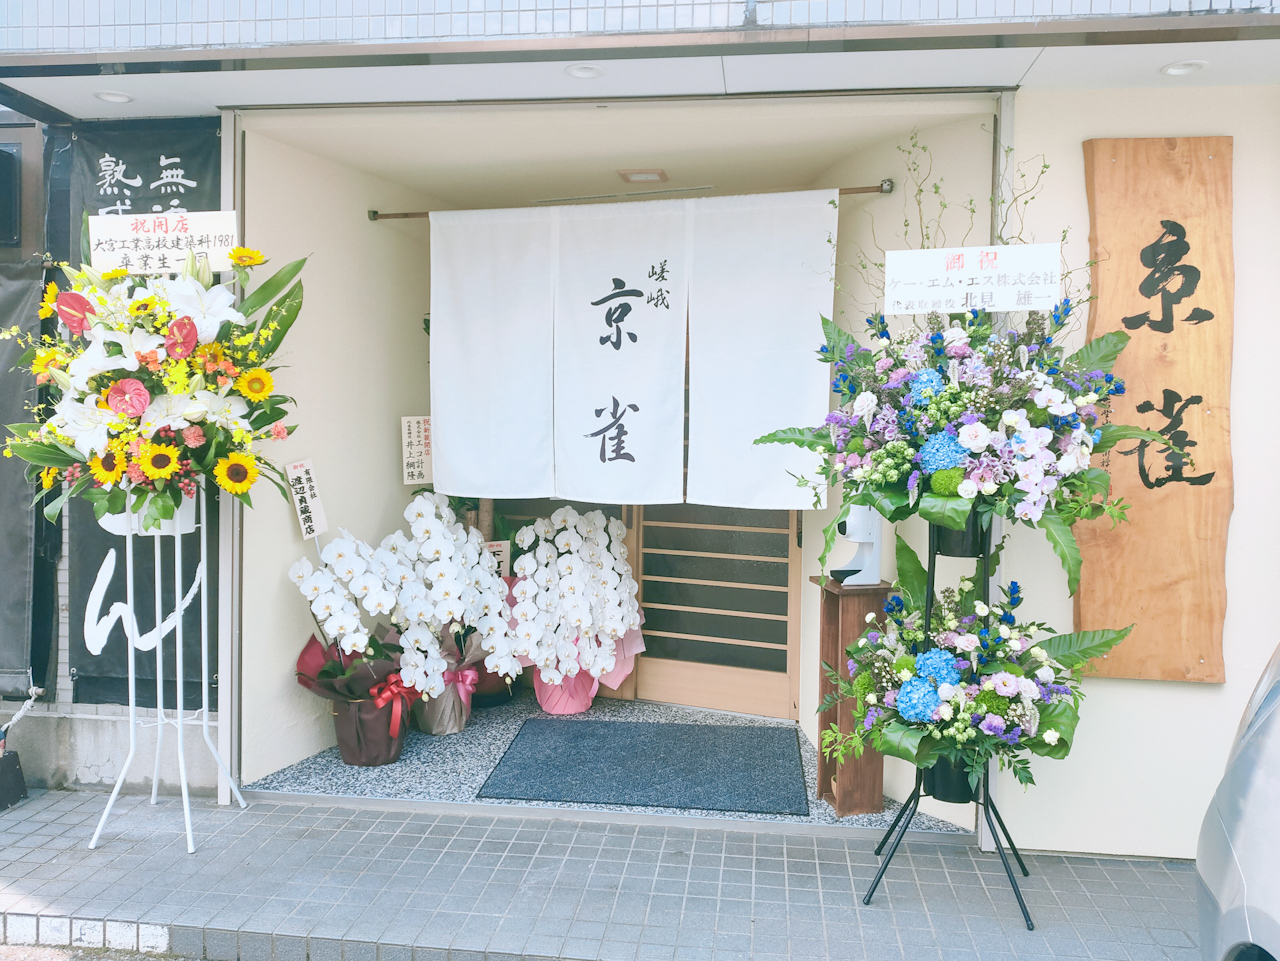 「京雀」さんは与野本町駅から徒歩５分、与野・本町通りにあります。